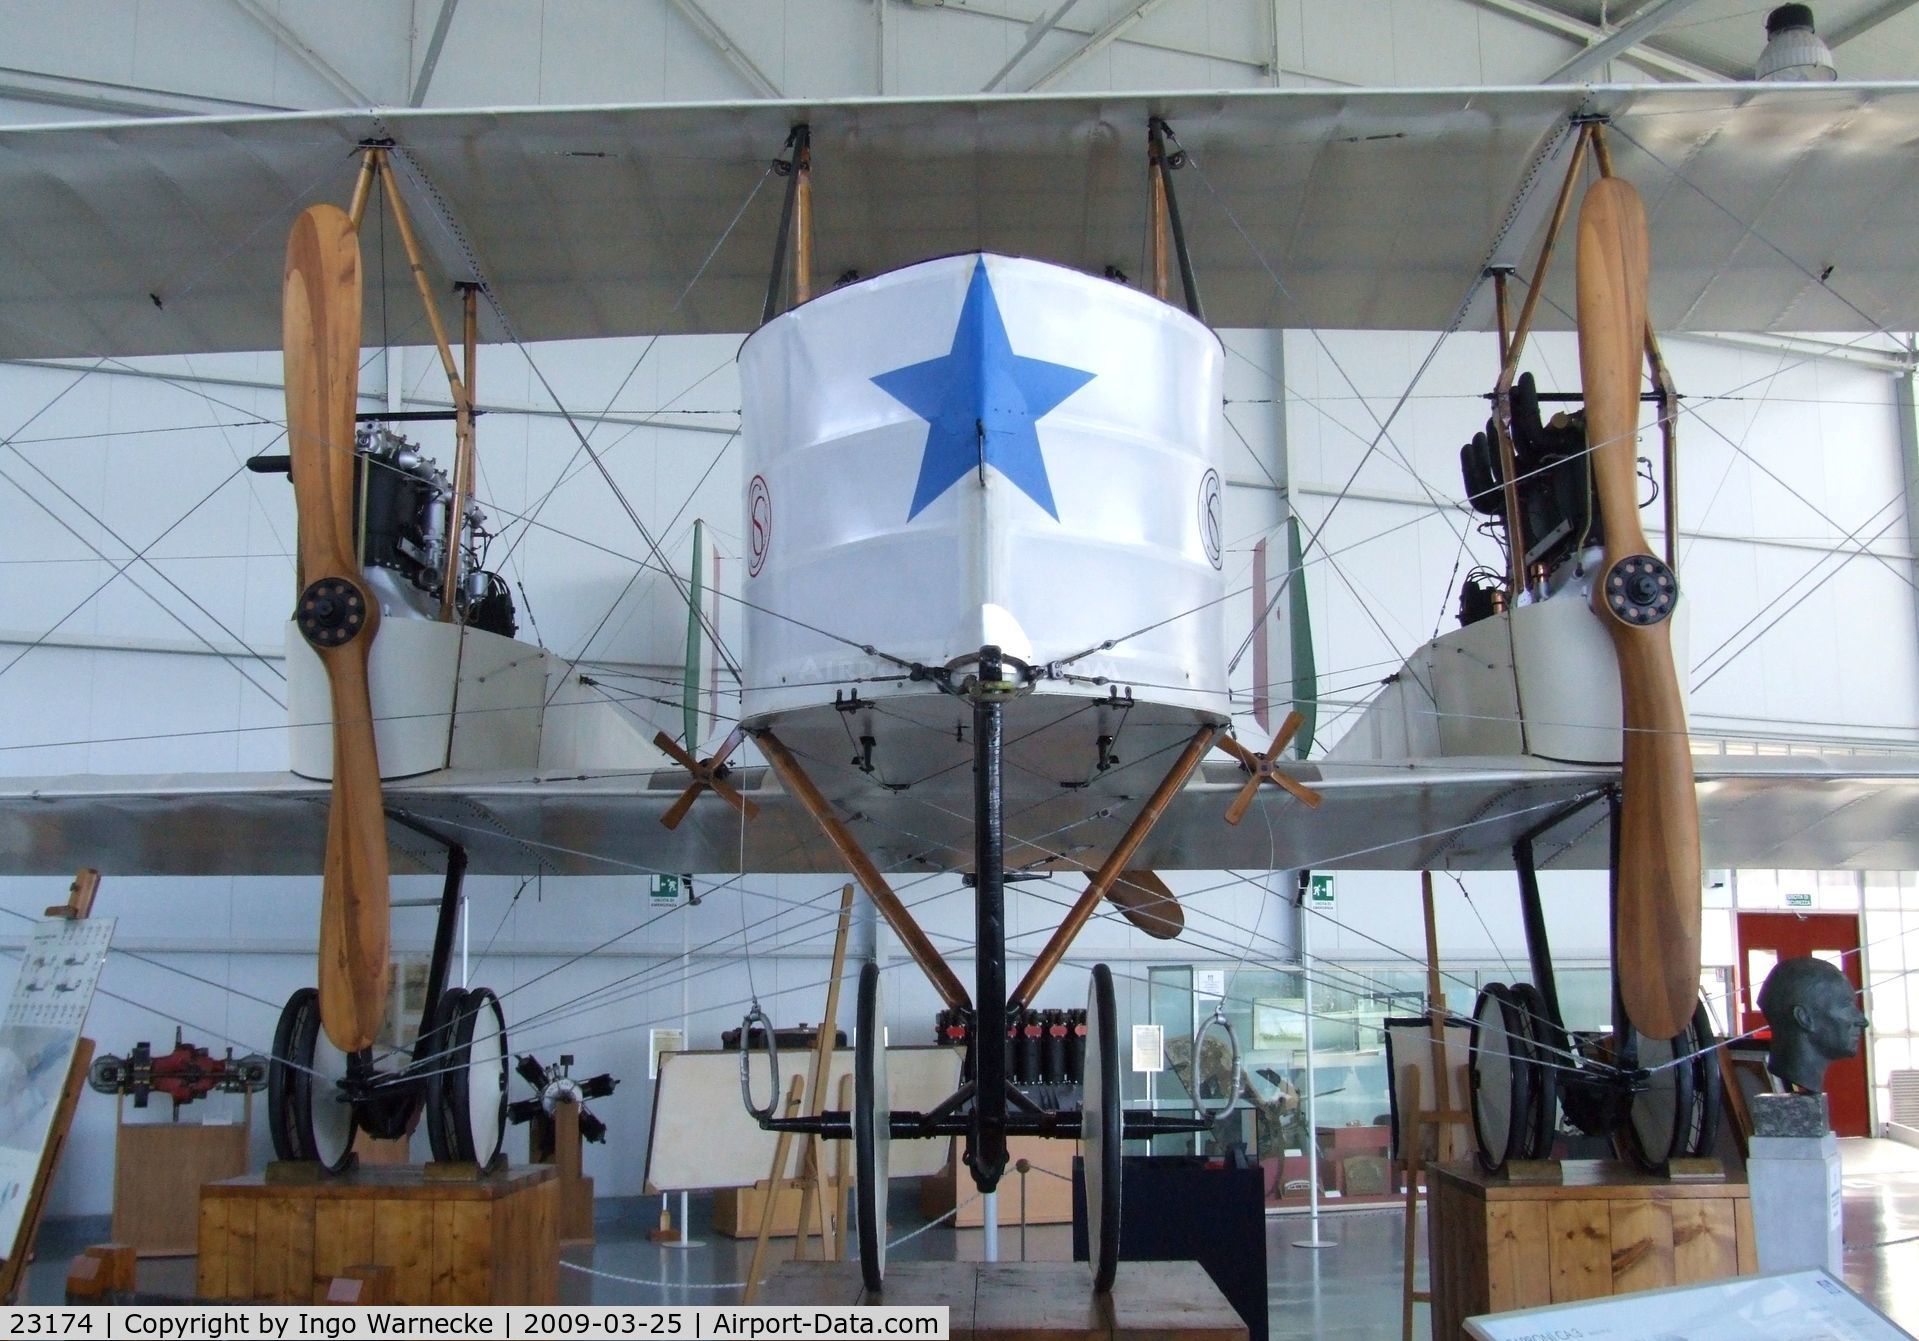 23174, 1916 Caproni Ca.3 Falco C/N unknown_23174, Caproni Ca.3 (Ca.33) at the Museo storico dell'Aeronautica Militare, Vigna di Valle